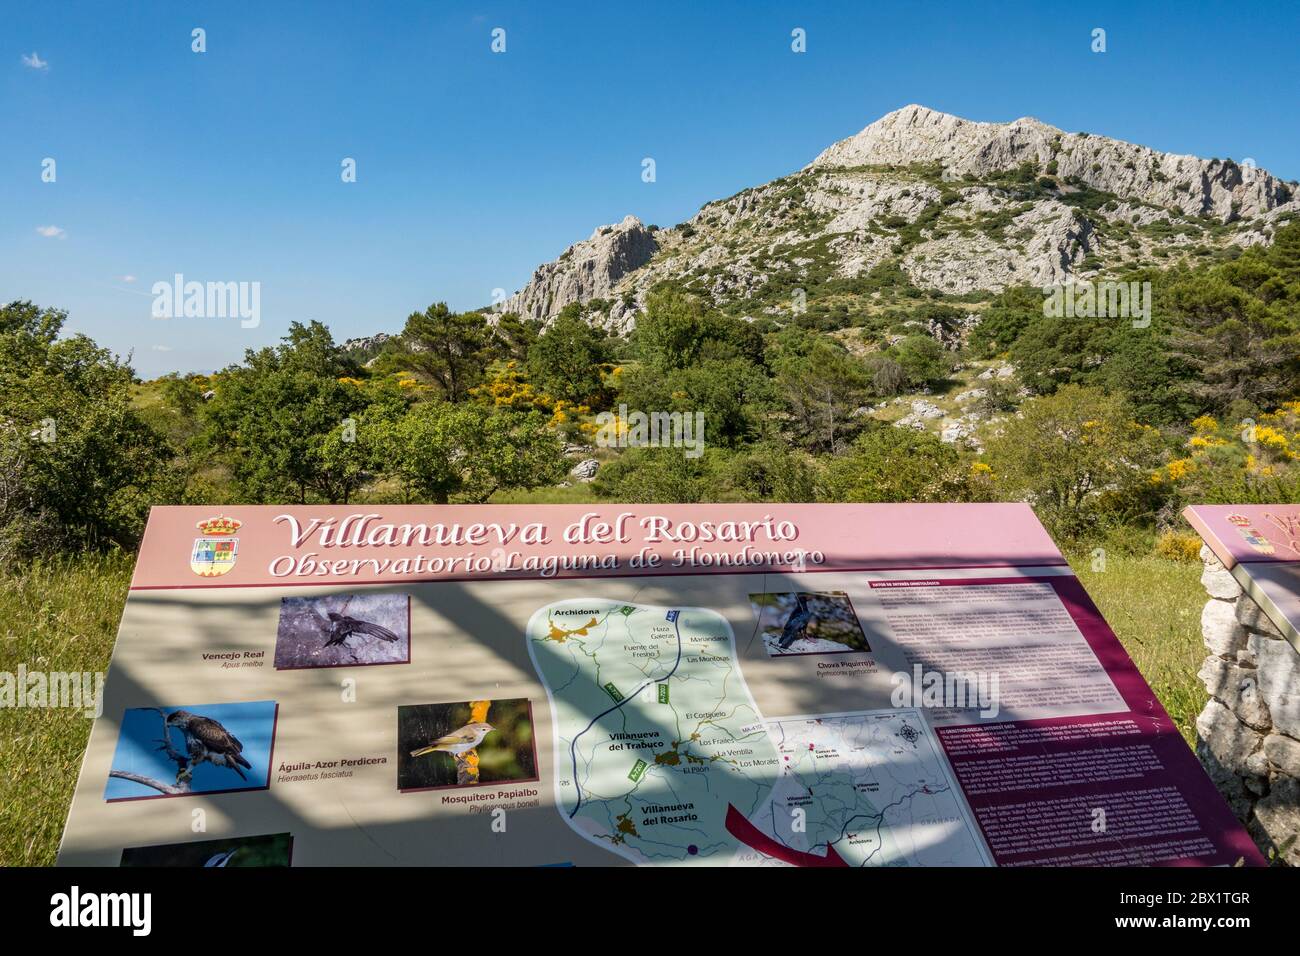 Information board at Sierra de Camarolos, Hondonero, Villanueva del Rosario, Andalusia, Southern Spain Stock Photo